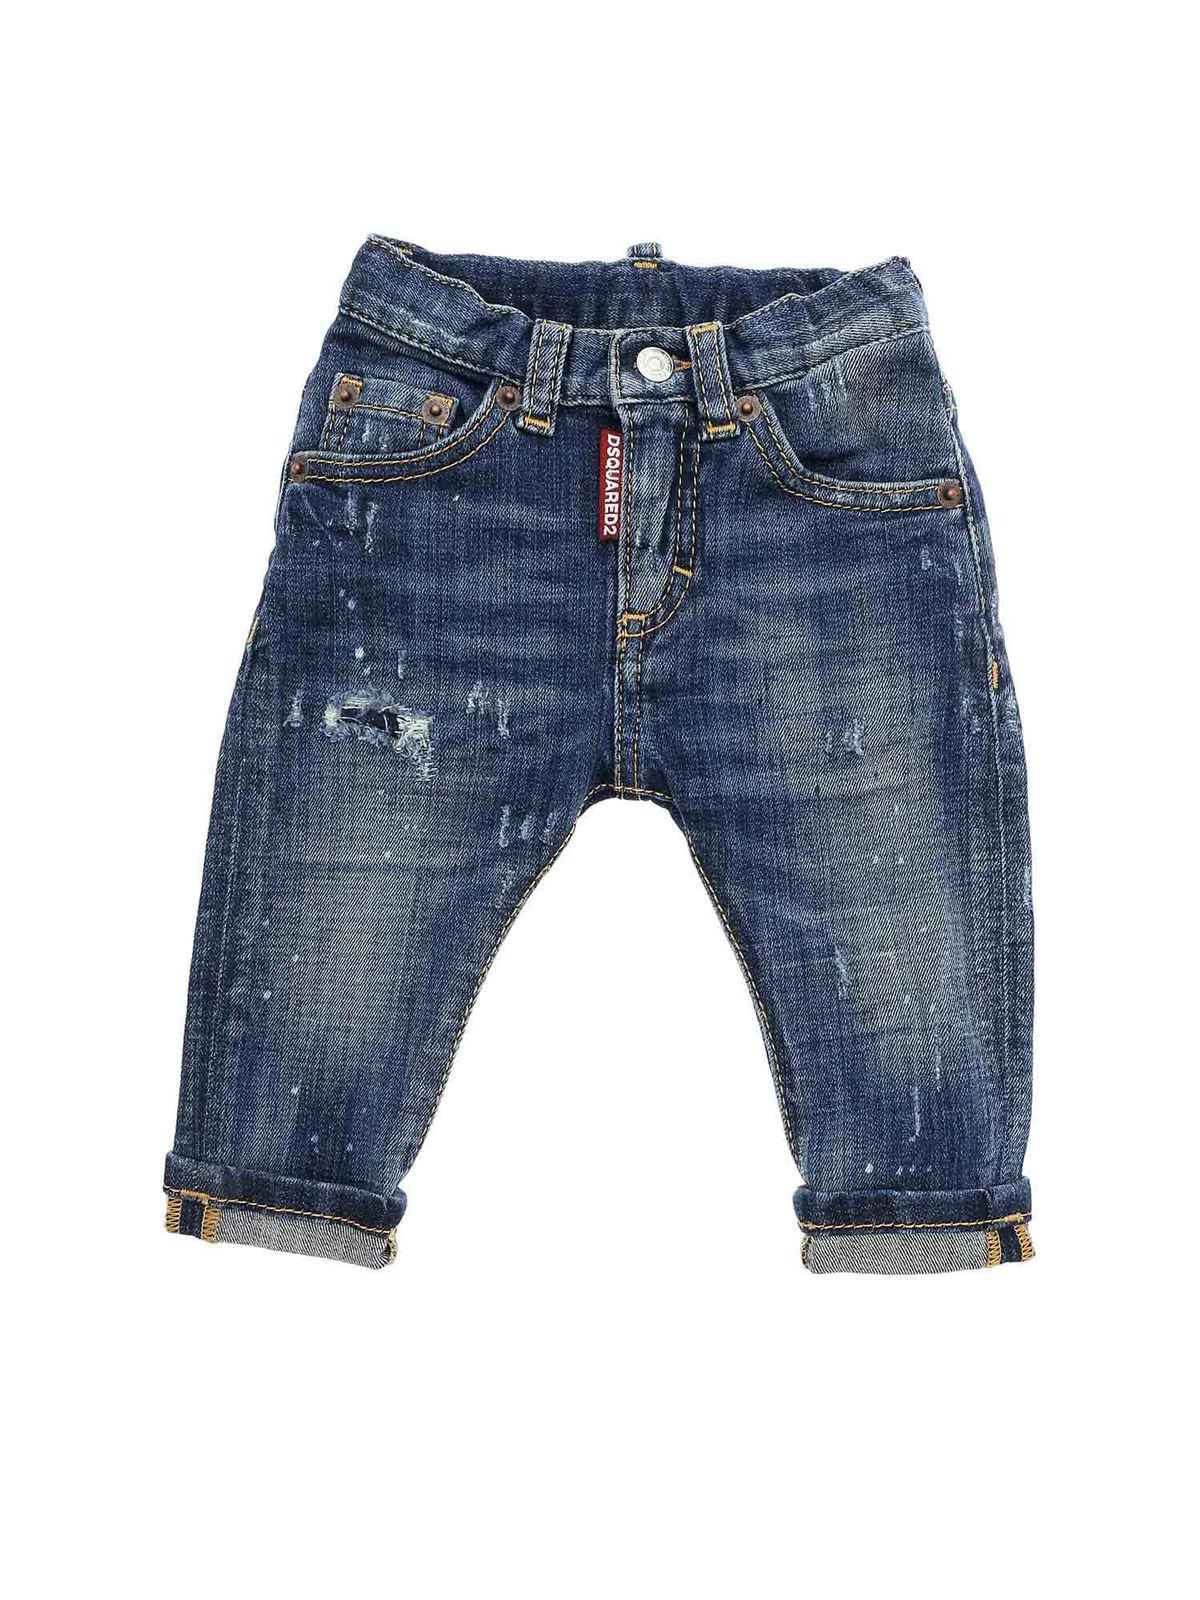 dsquared jeans junior sale